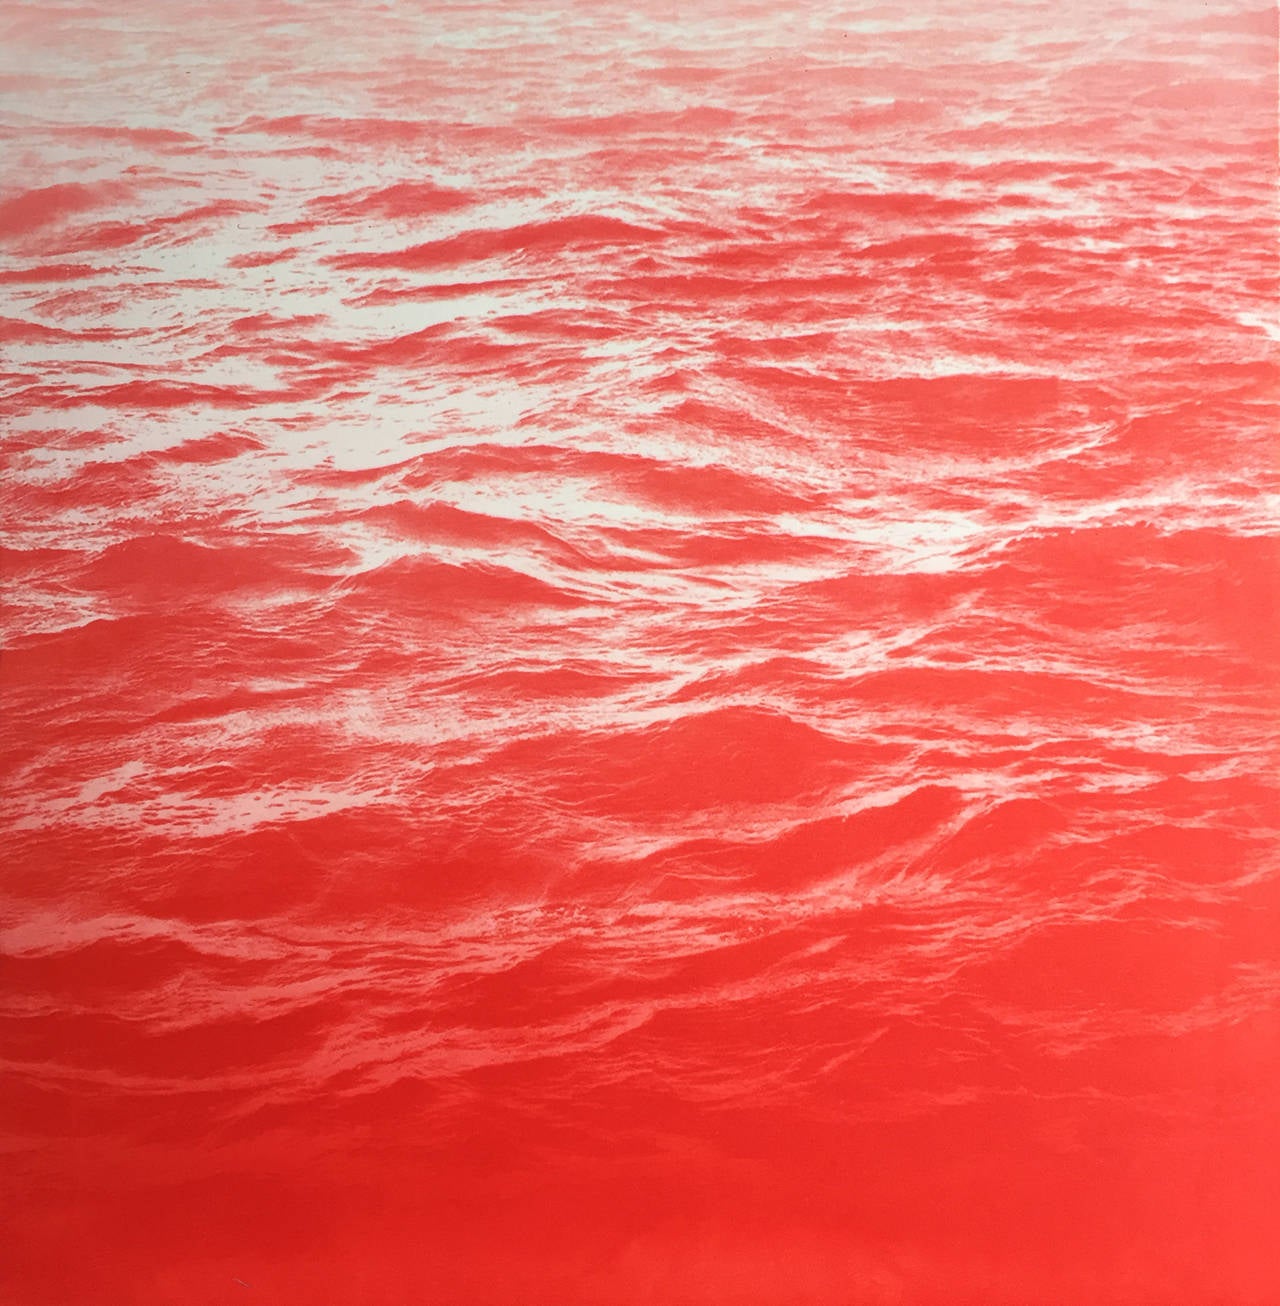 Red Cherry Sea - Mixed Media Art by Mary Beth Thielhelm